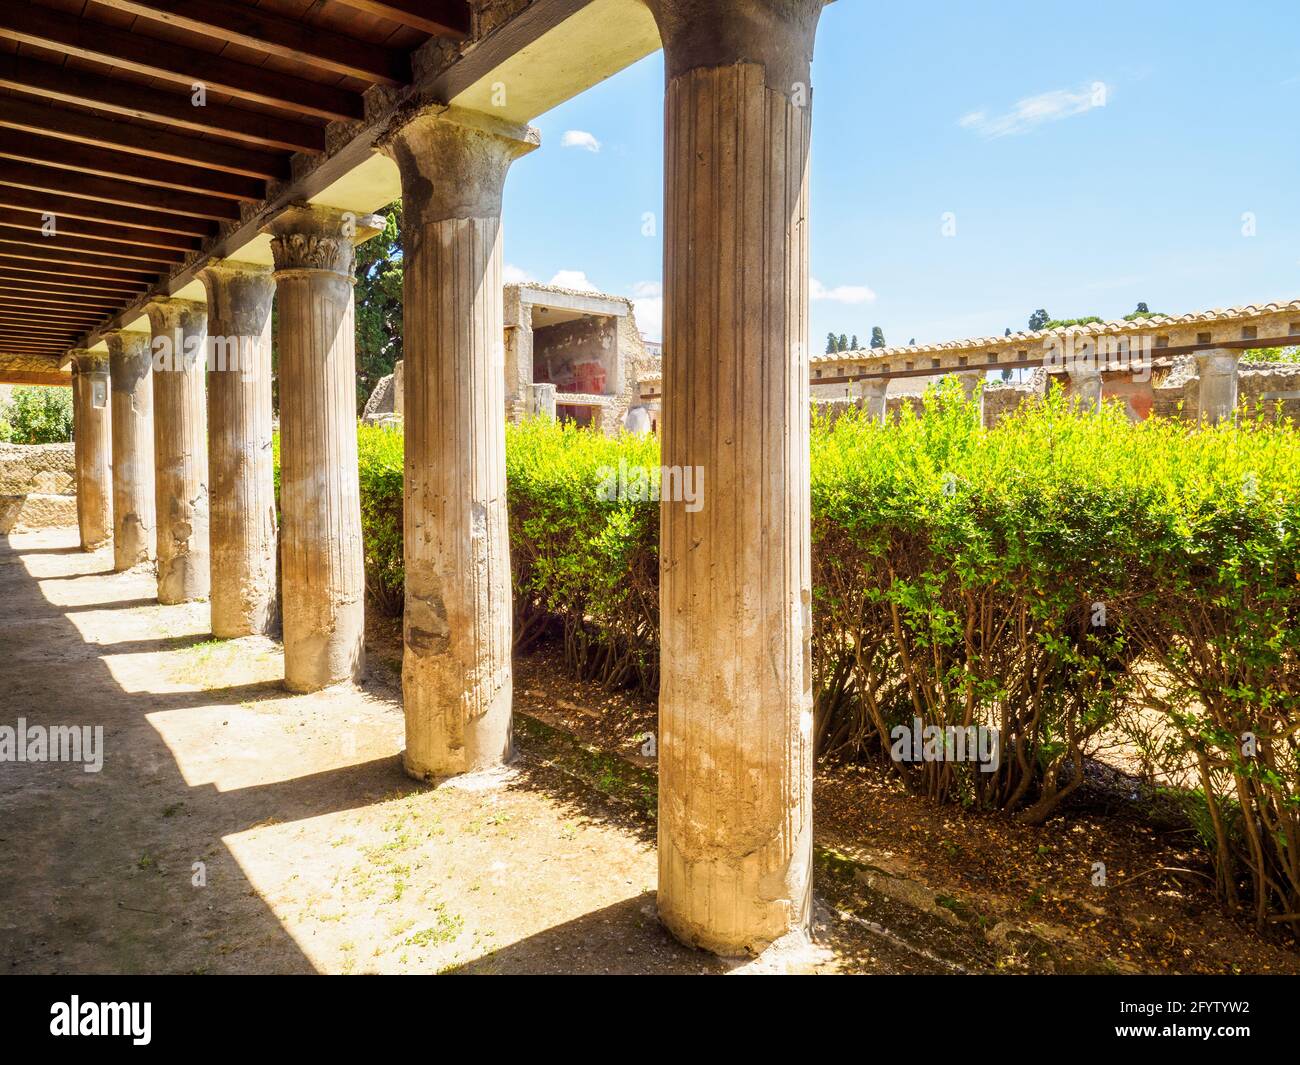 Peristyle (offener Hof oder Garten, umgeben von einer Kolonnade) - Haus des Argus (Casa di Argo) - Herculaneum Ruinen, Italien Stockfoto